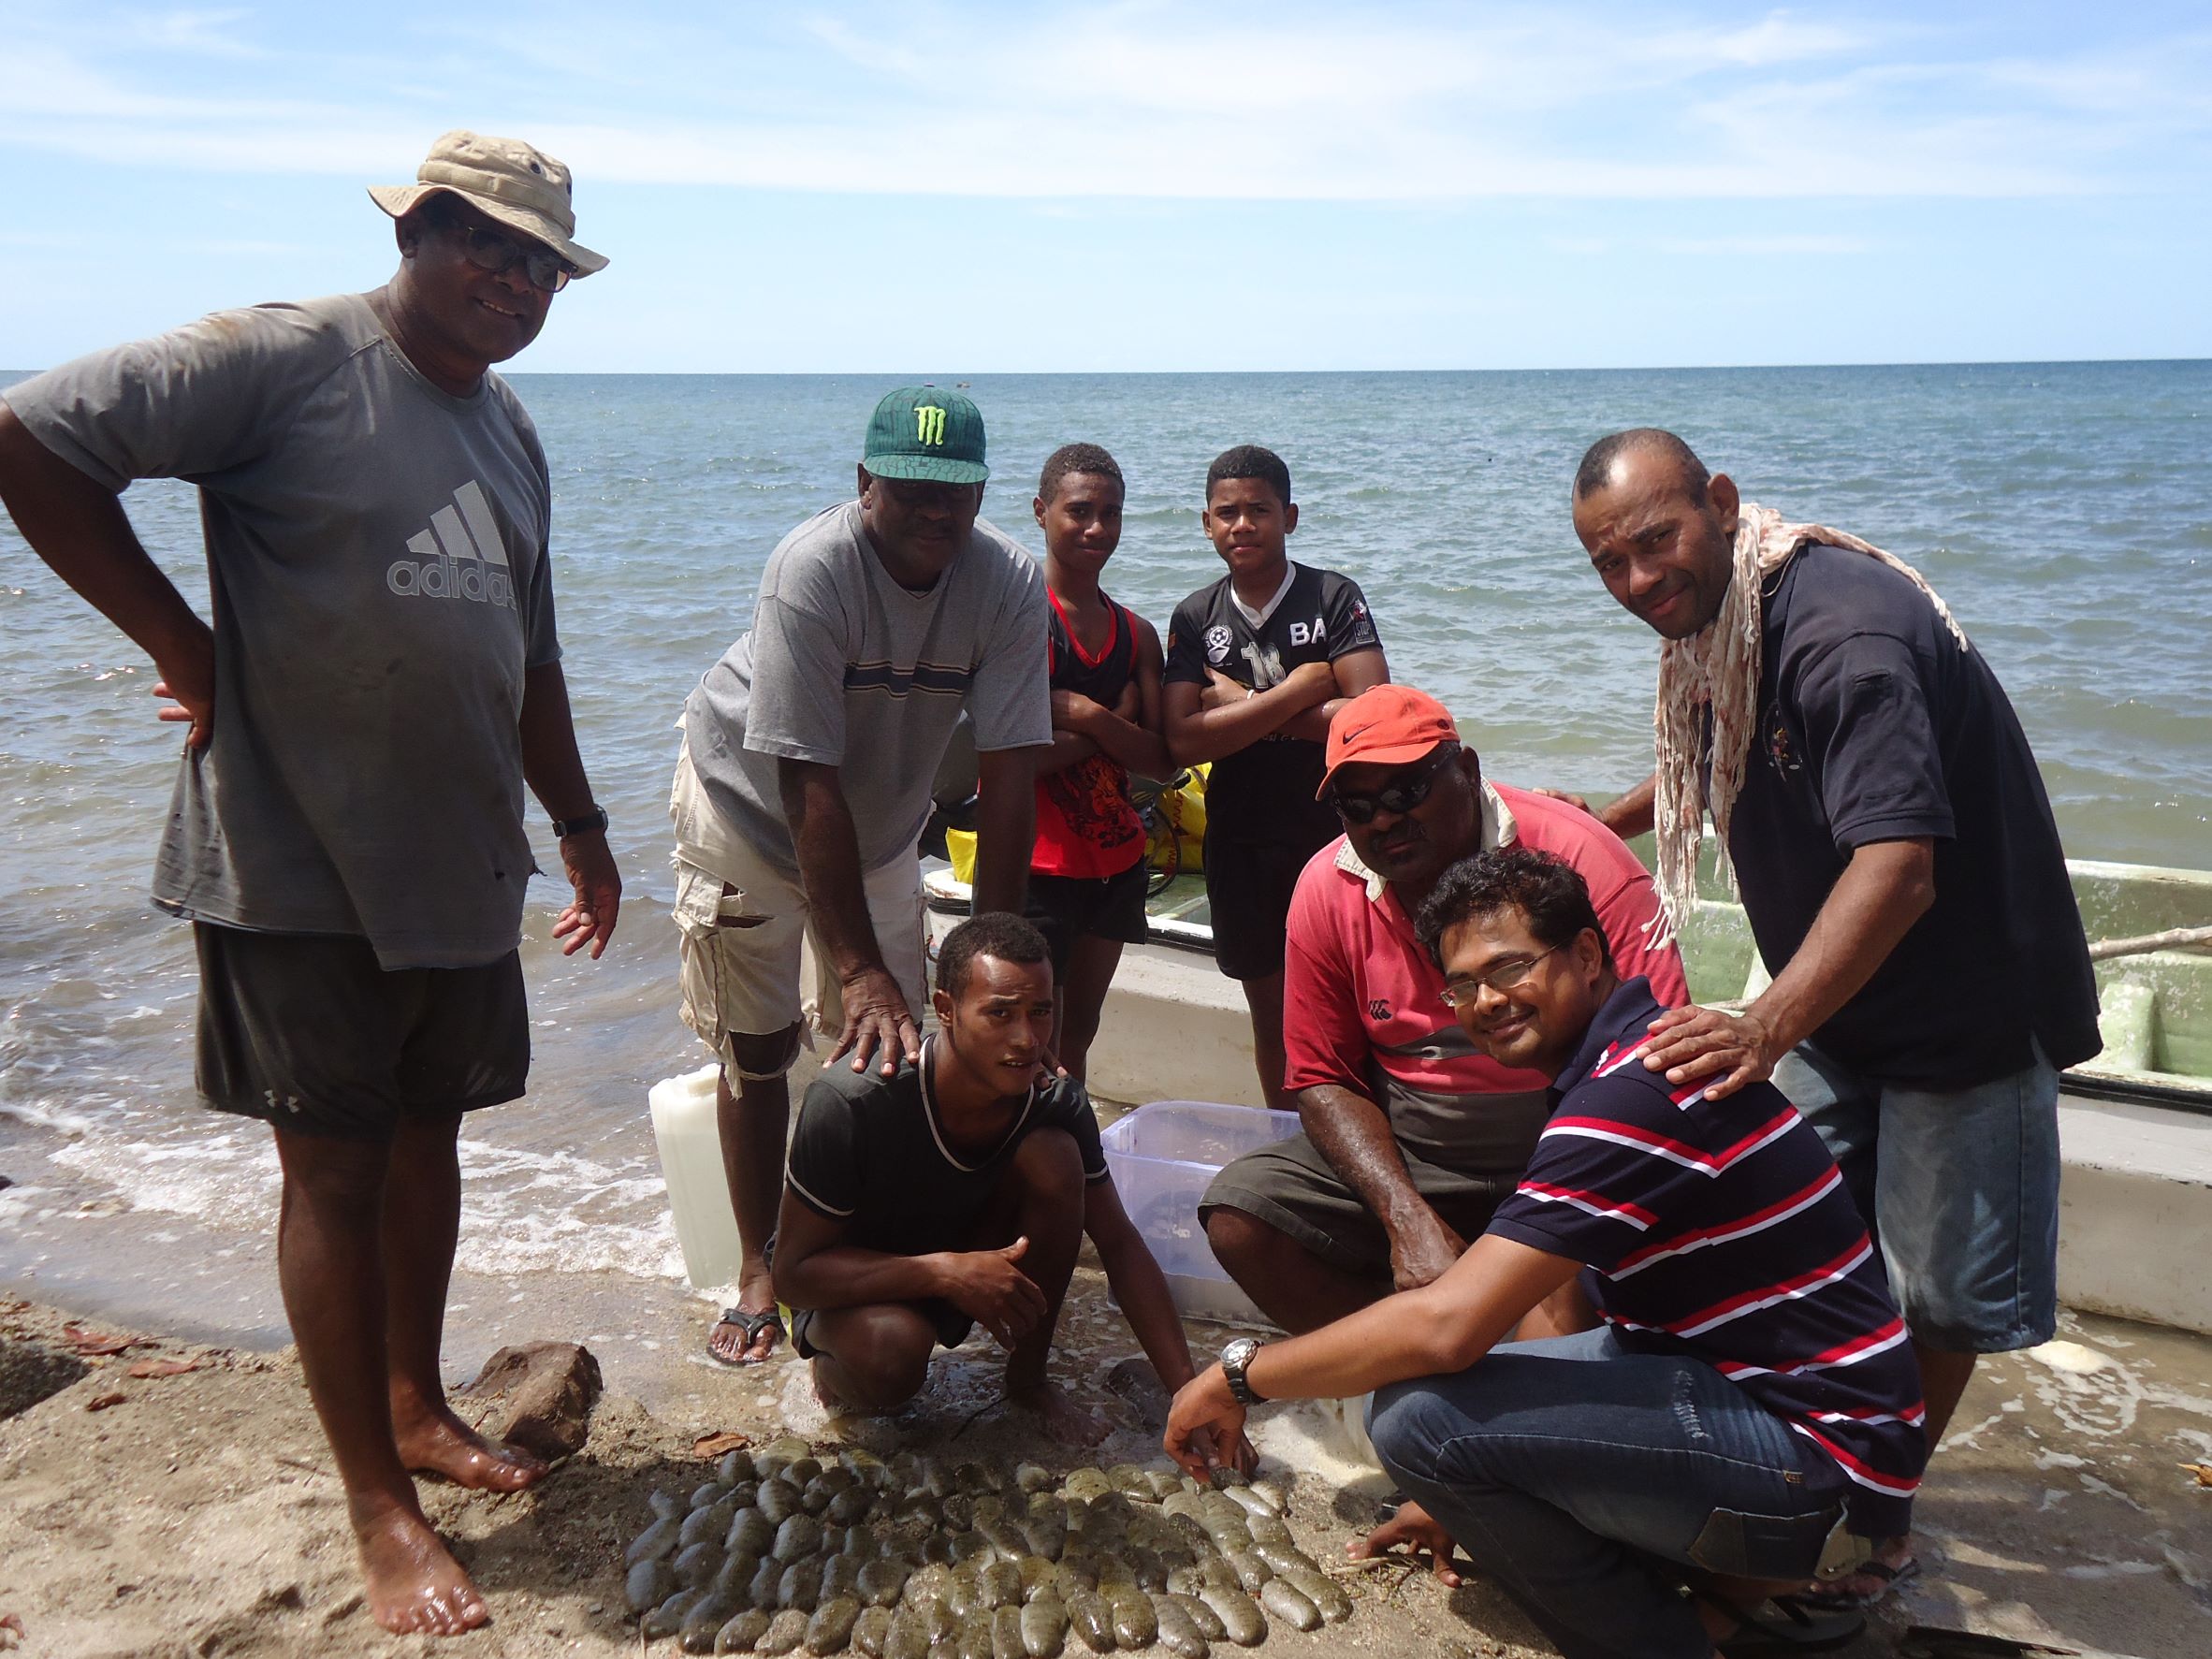 Harvesting sea cucumber